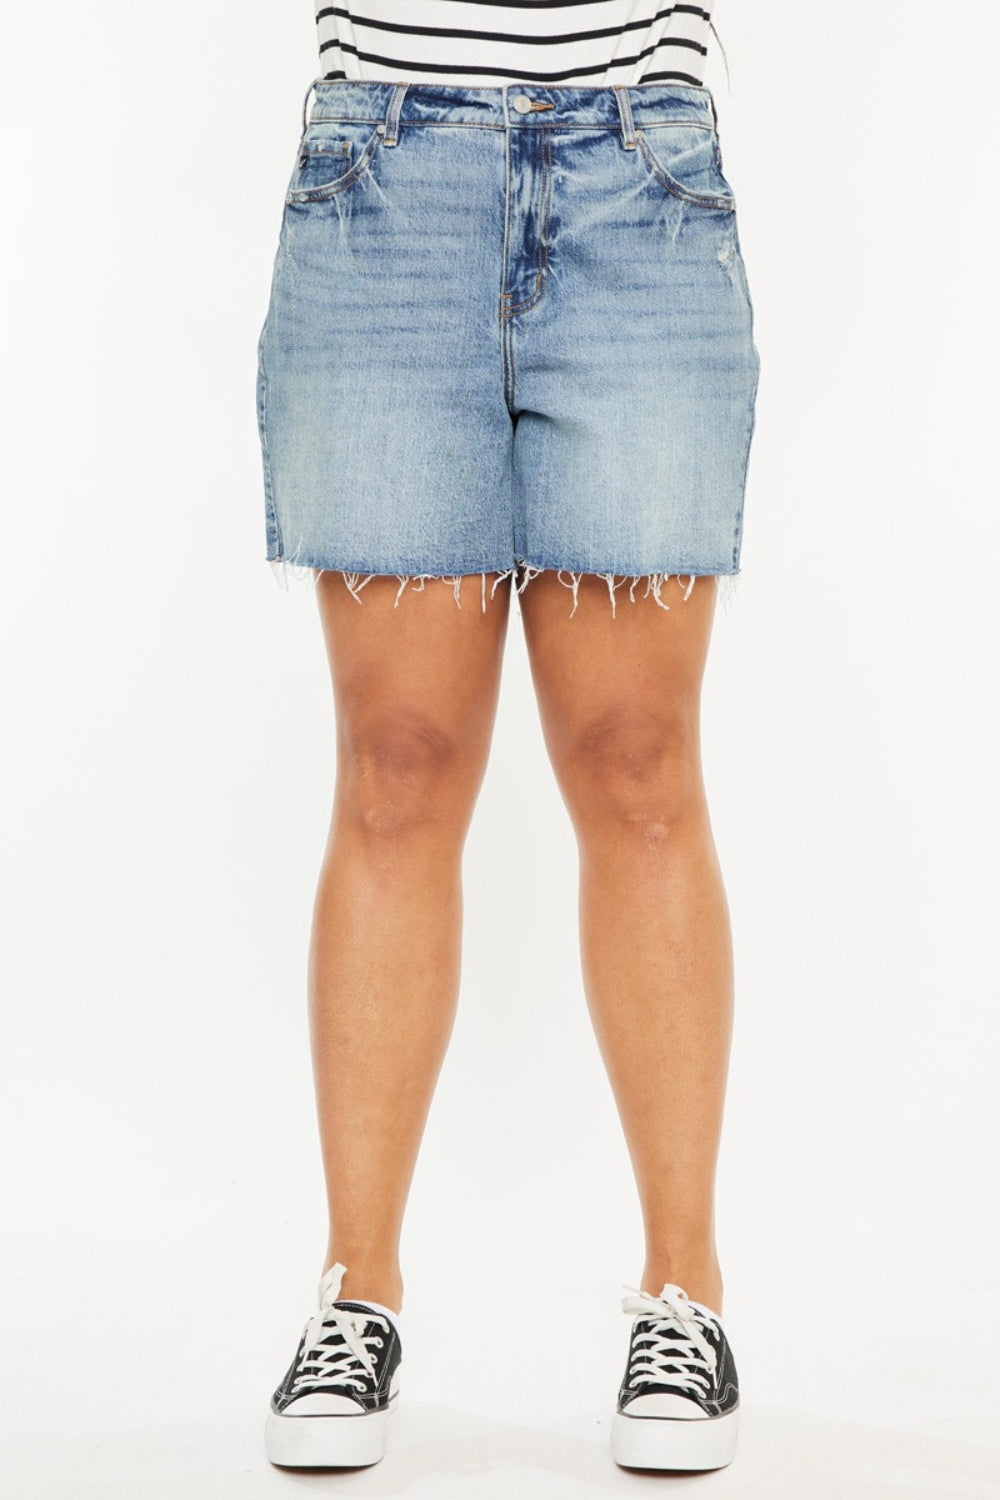 Kancan Full Size Raw Hem High Waist Denim Shorts